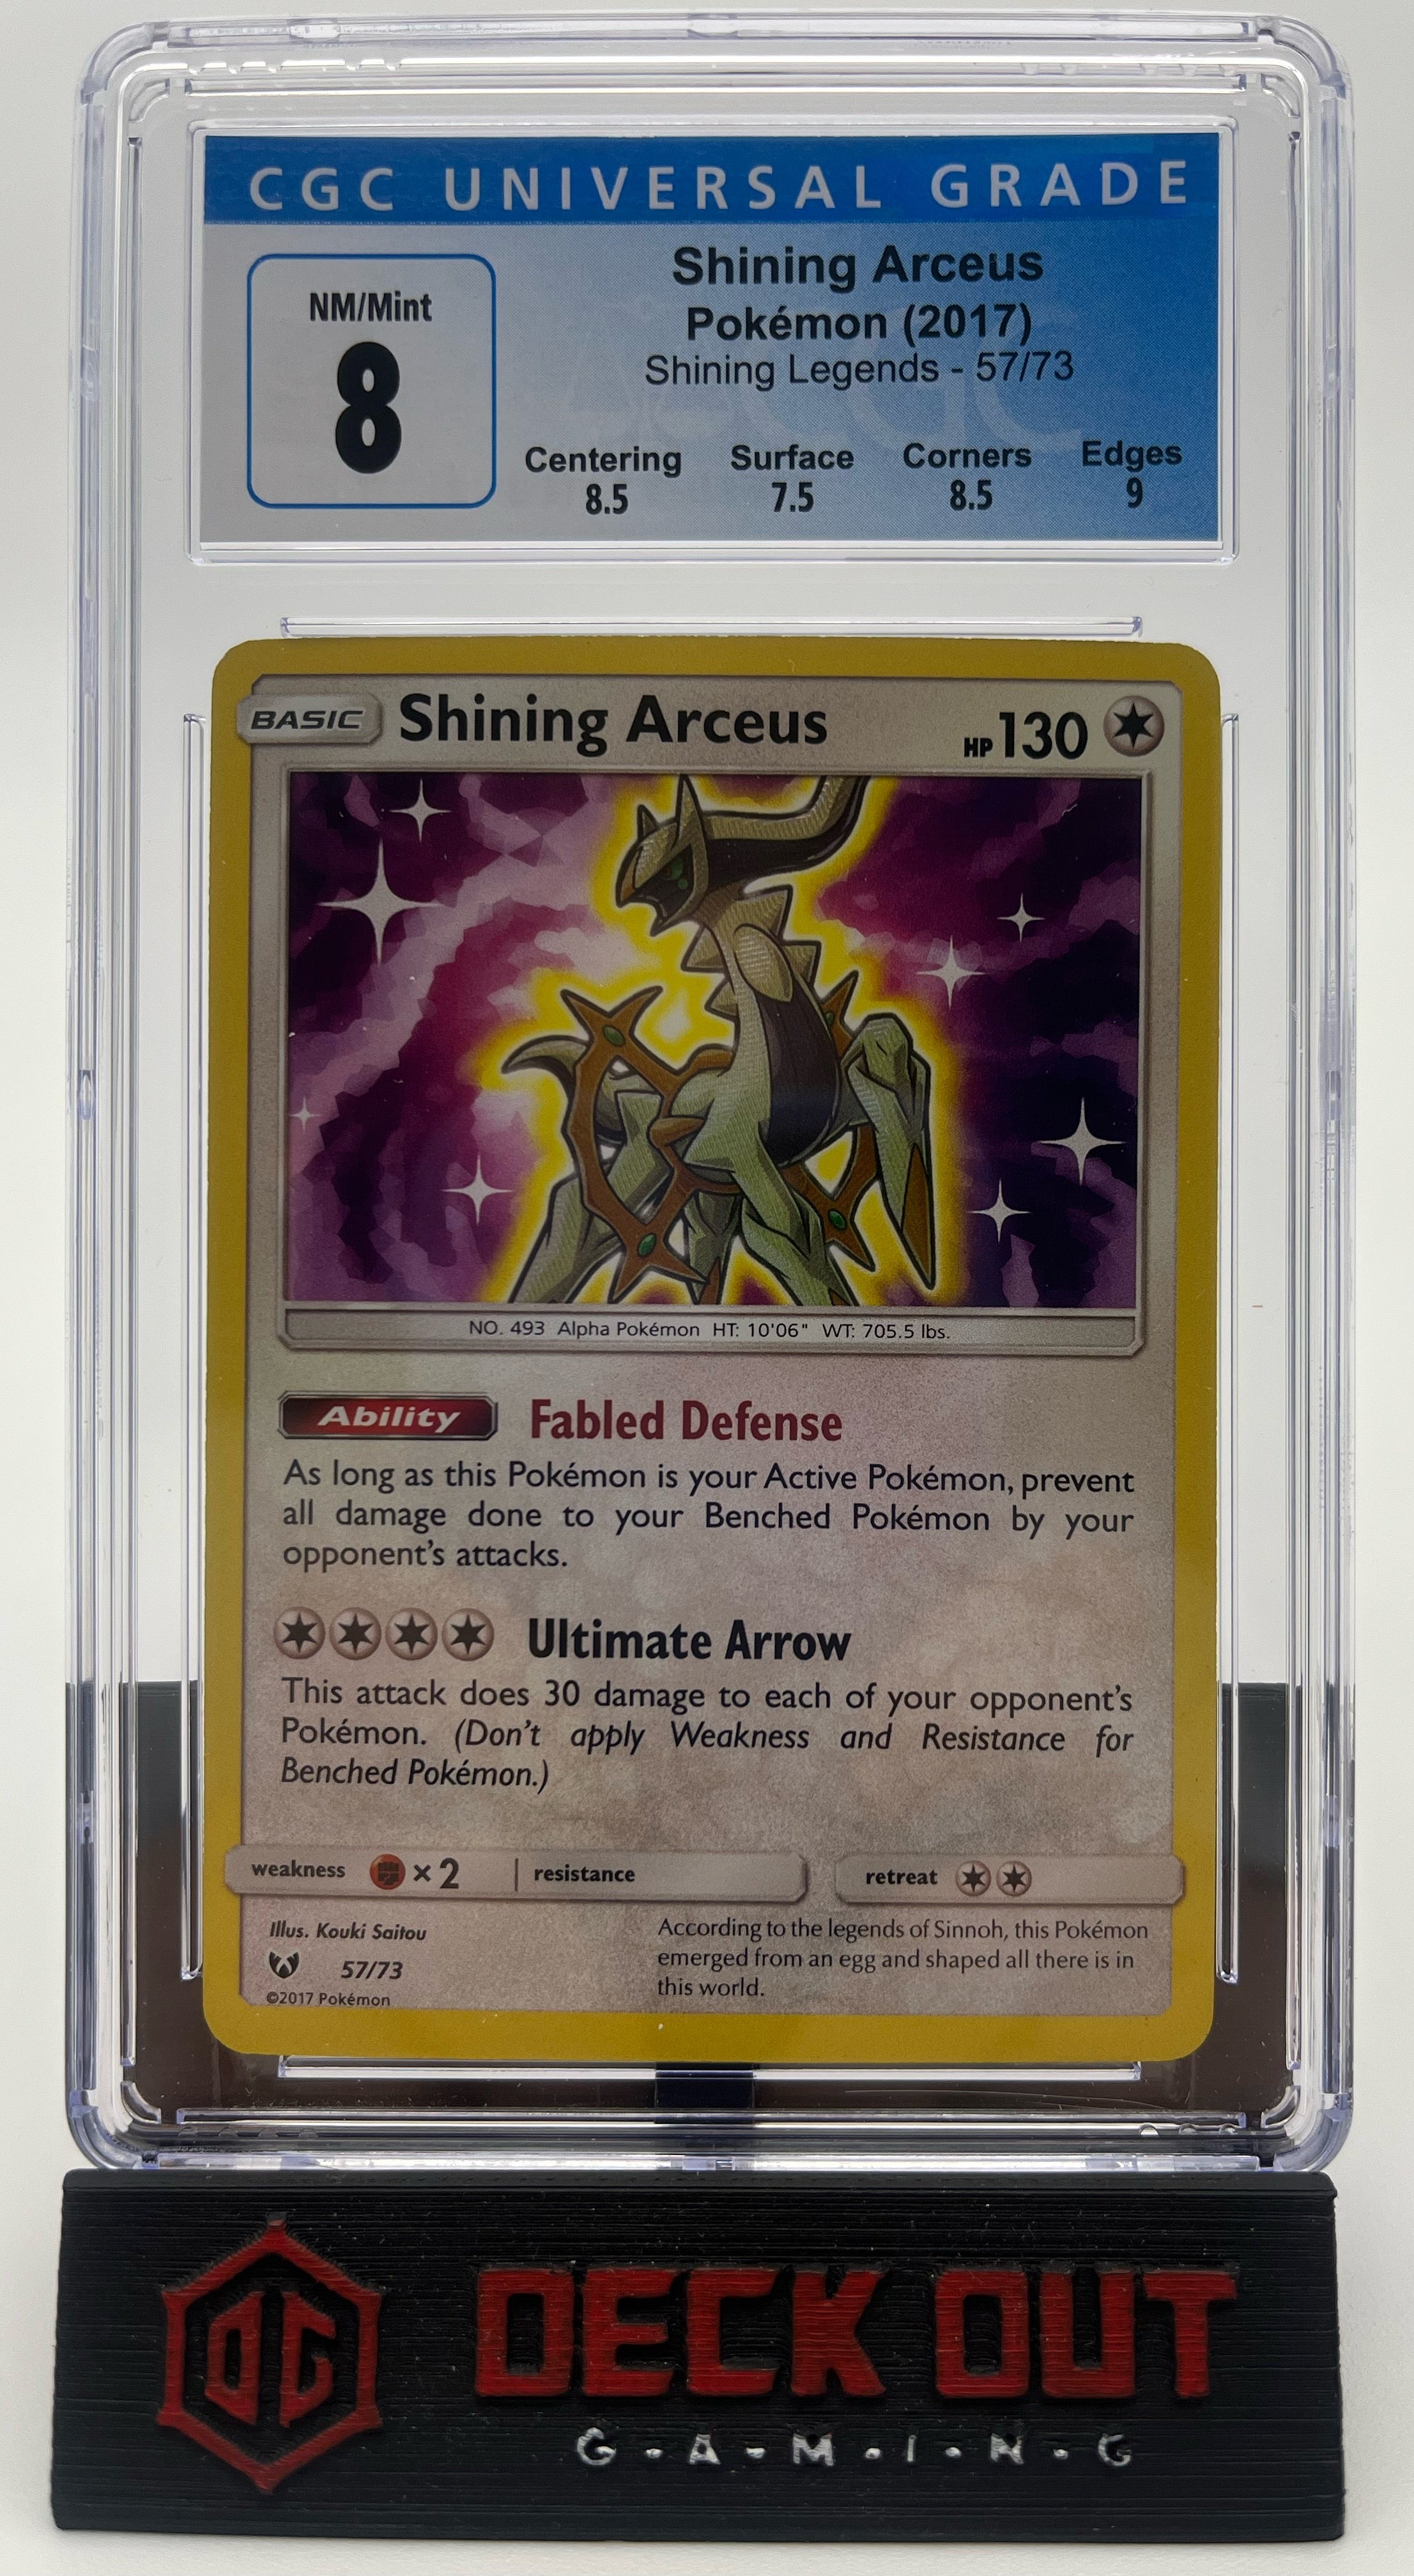 Shining Arceus - Shining Legends - 57/70 - CGC 8.0 (8.5/7.5/8.5/9.0)